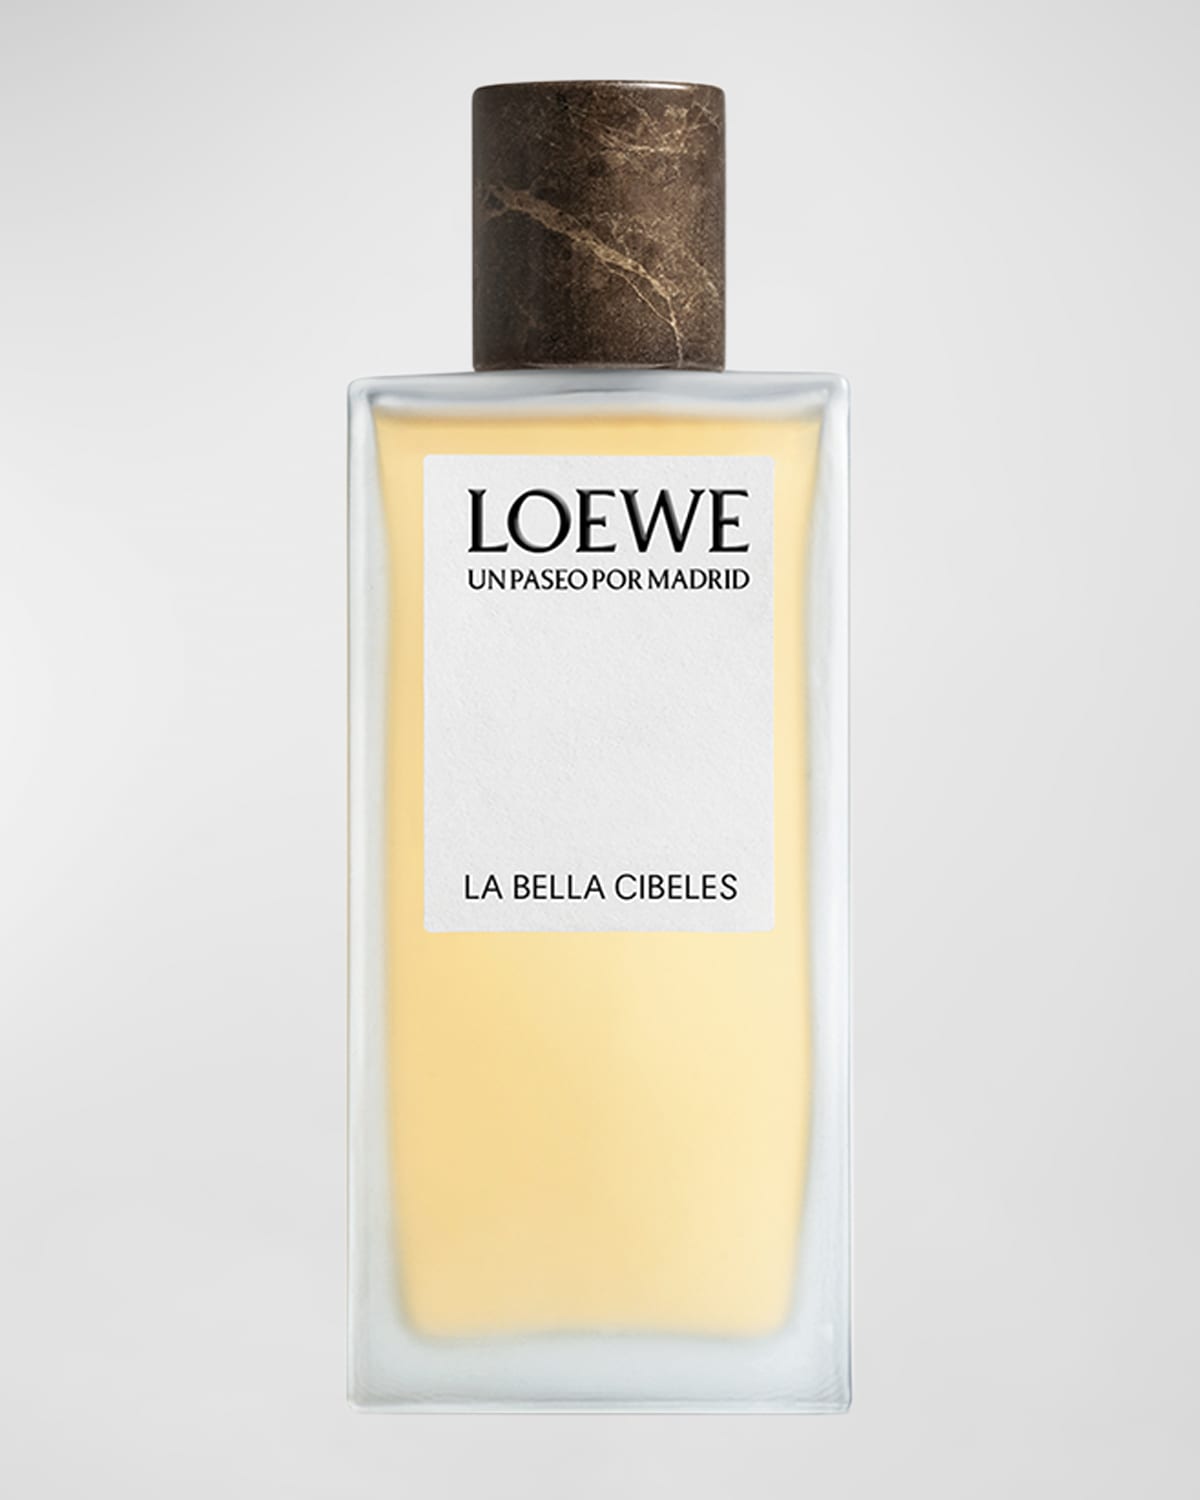 Shop Loewe Un Paseo Por Madrid La Bella Cibeles Eau De Parfum, 3.4 Oz.